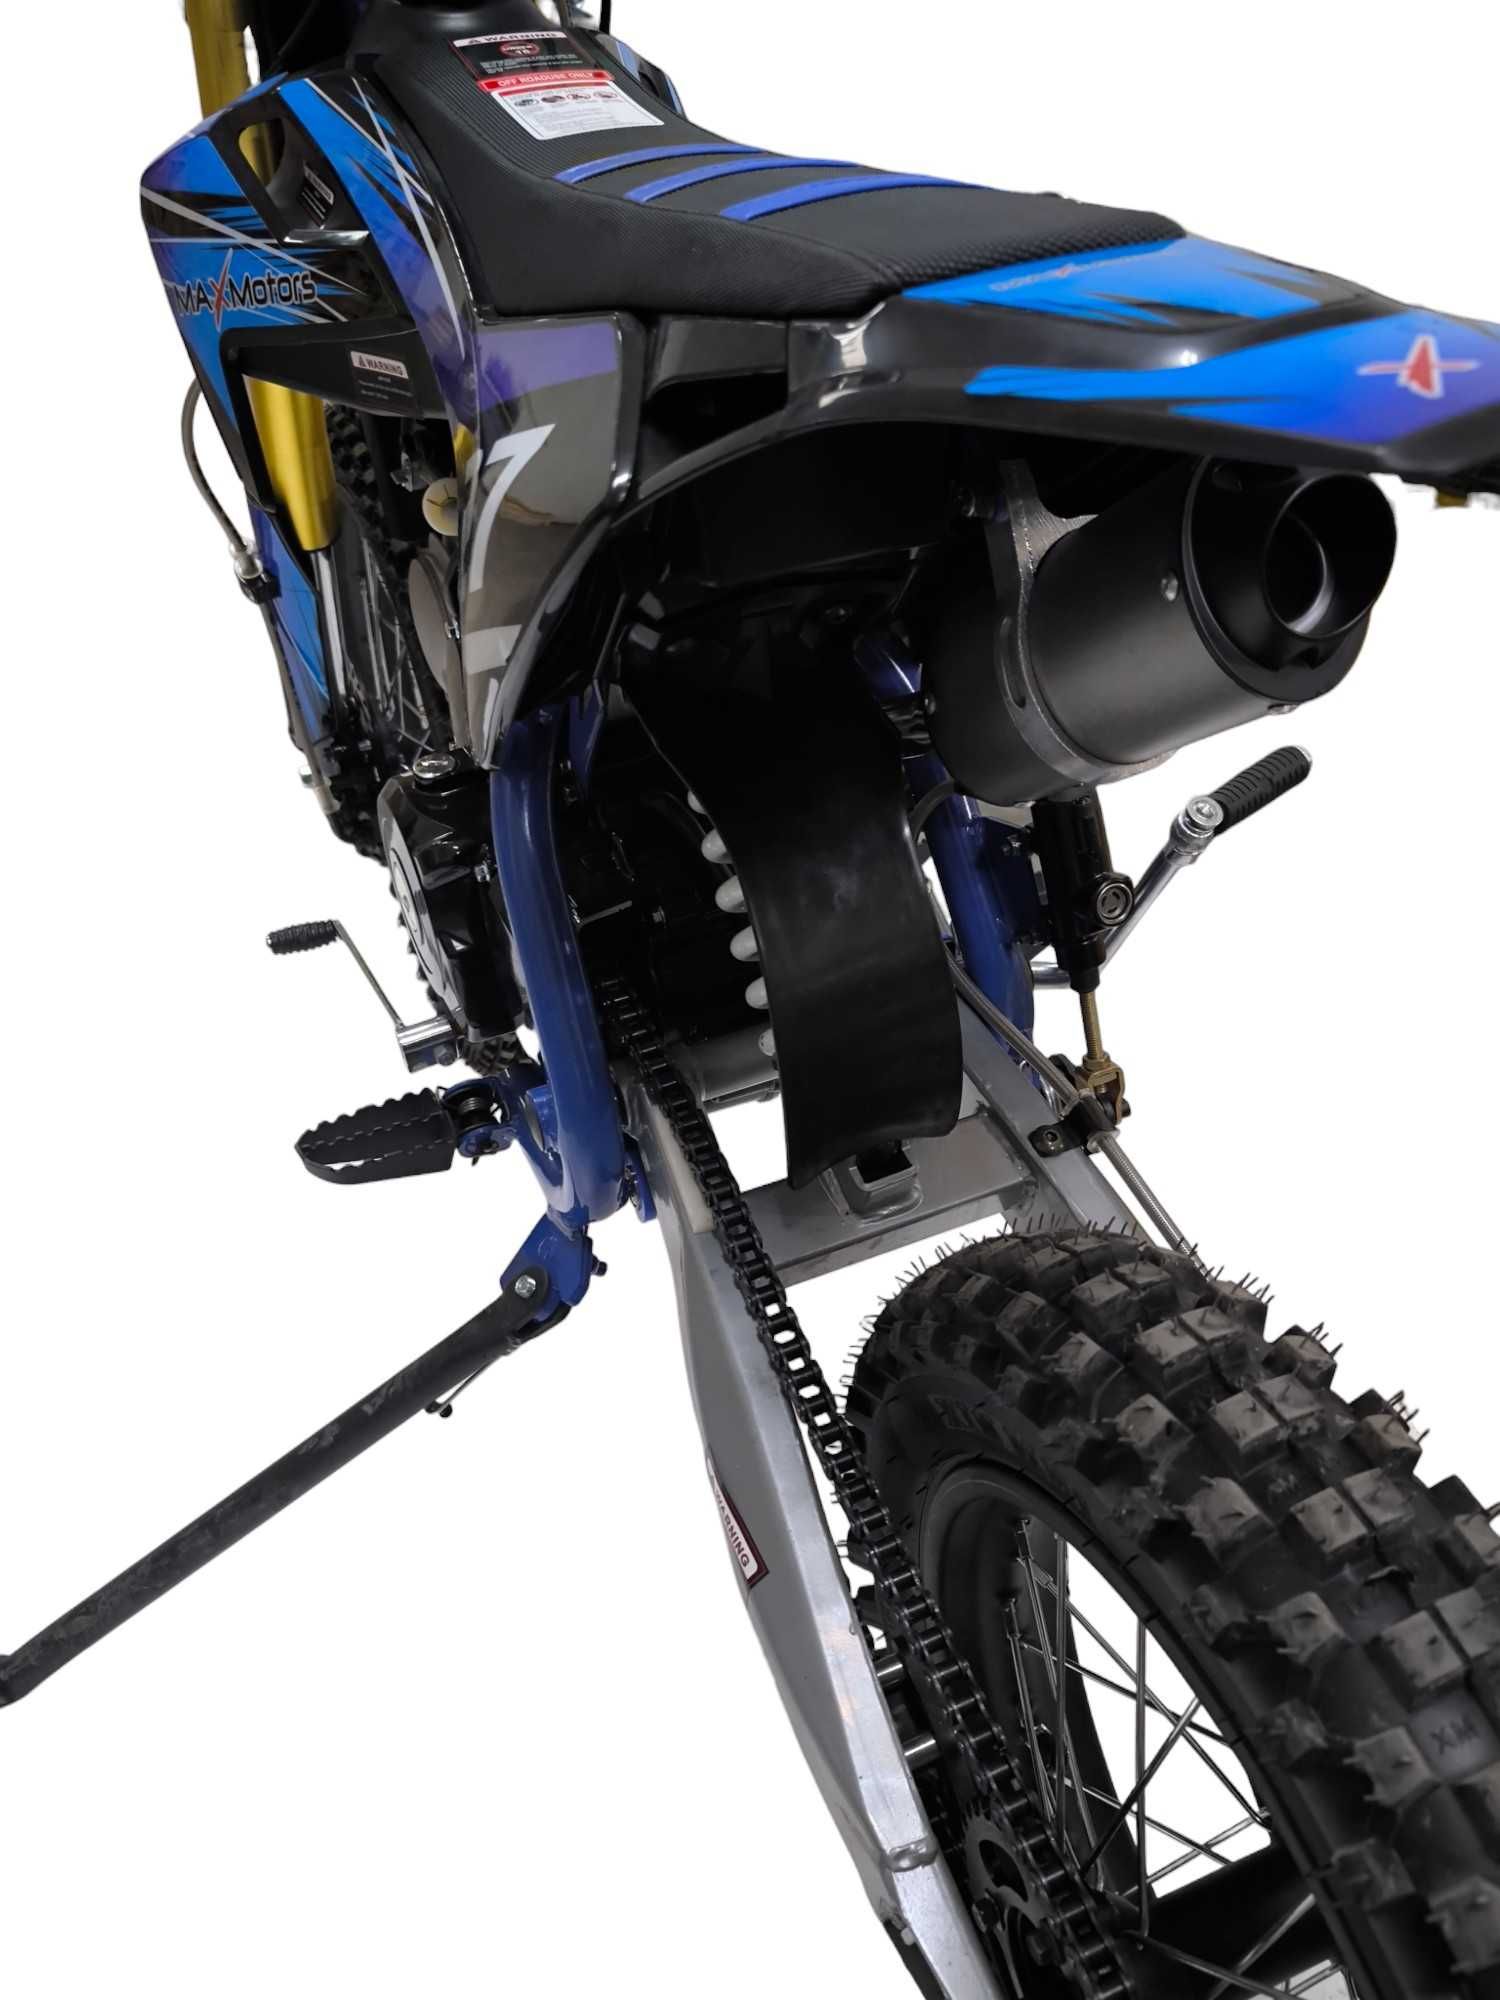 Бензинов кросов мотор 125 cc/кубика MaxMotors - Blue